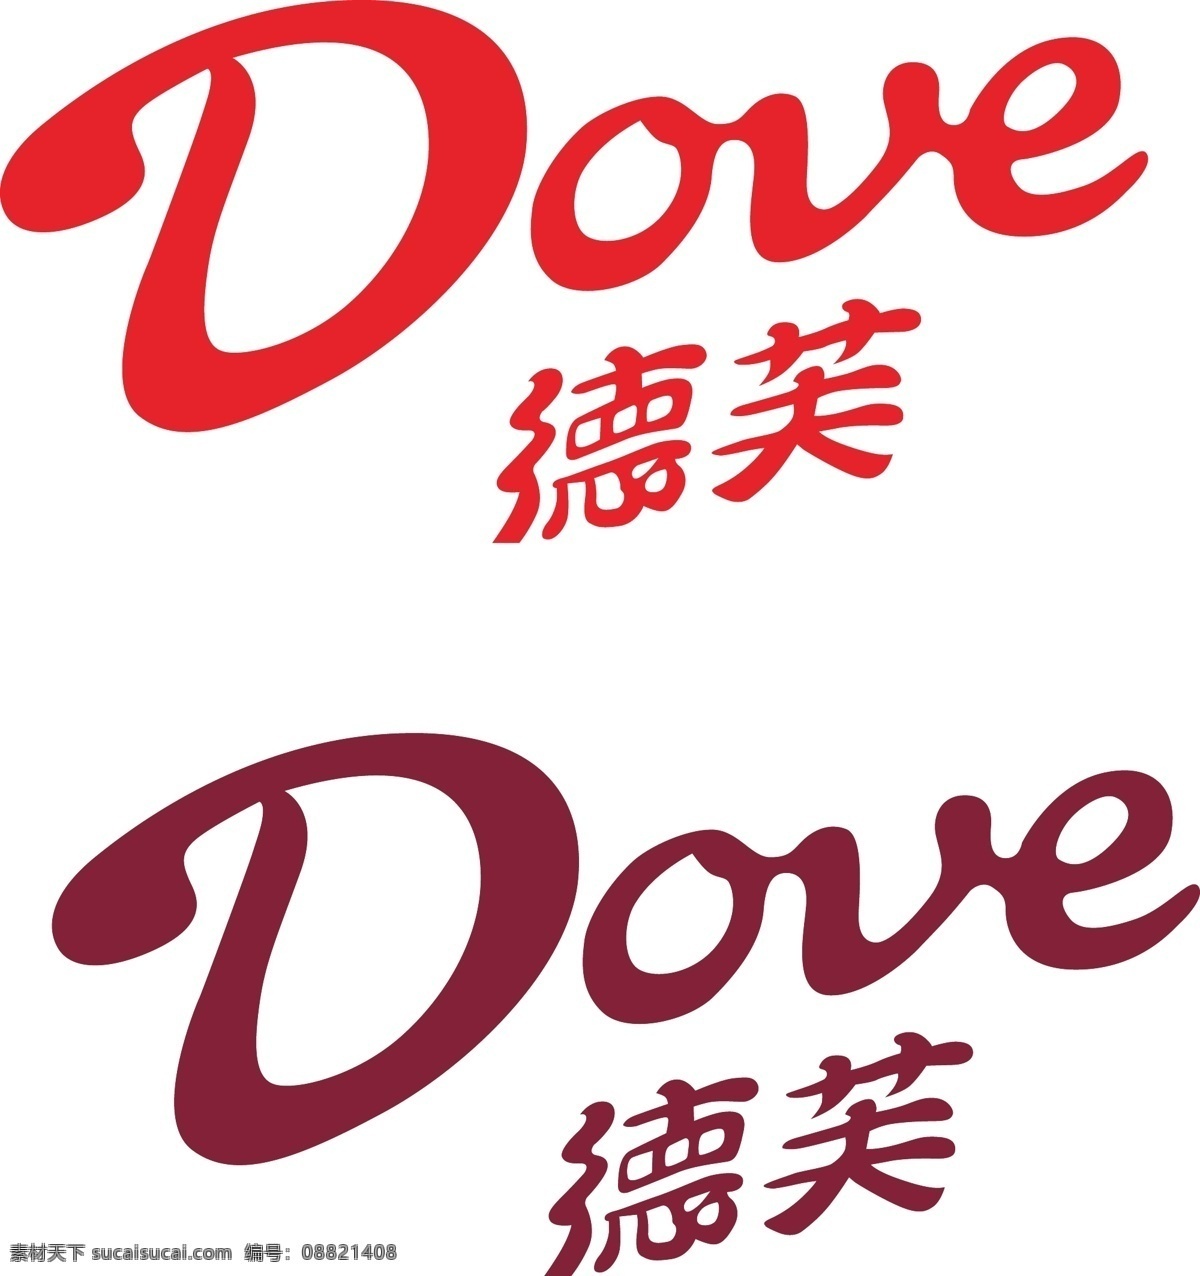 德芙logo 德芙 德芙标识 巧克力 爱情 logo设计